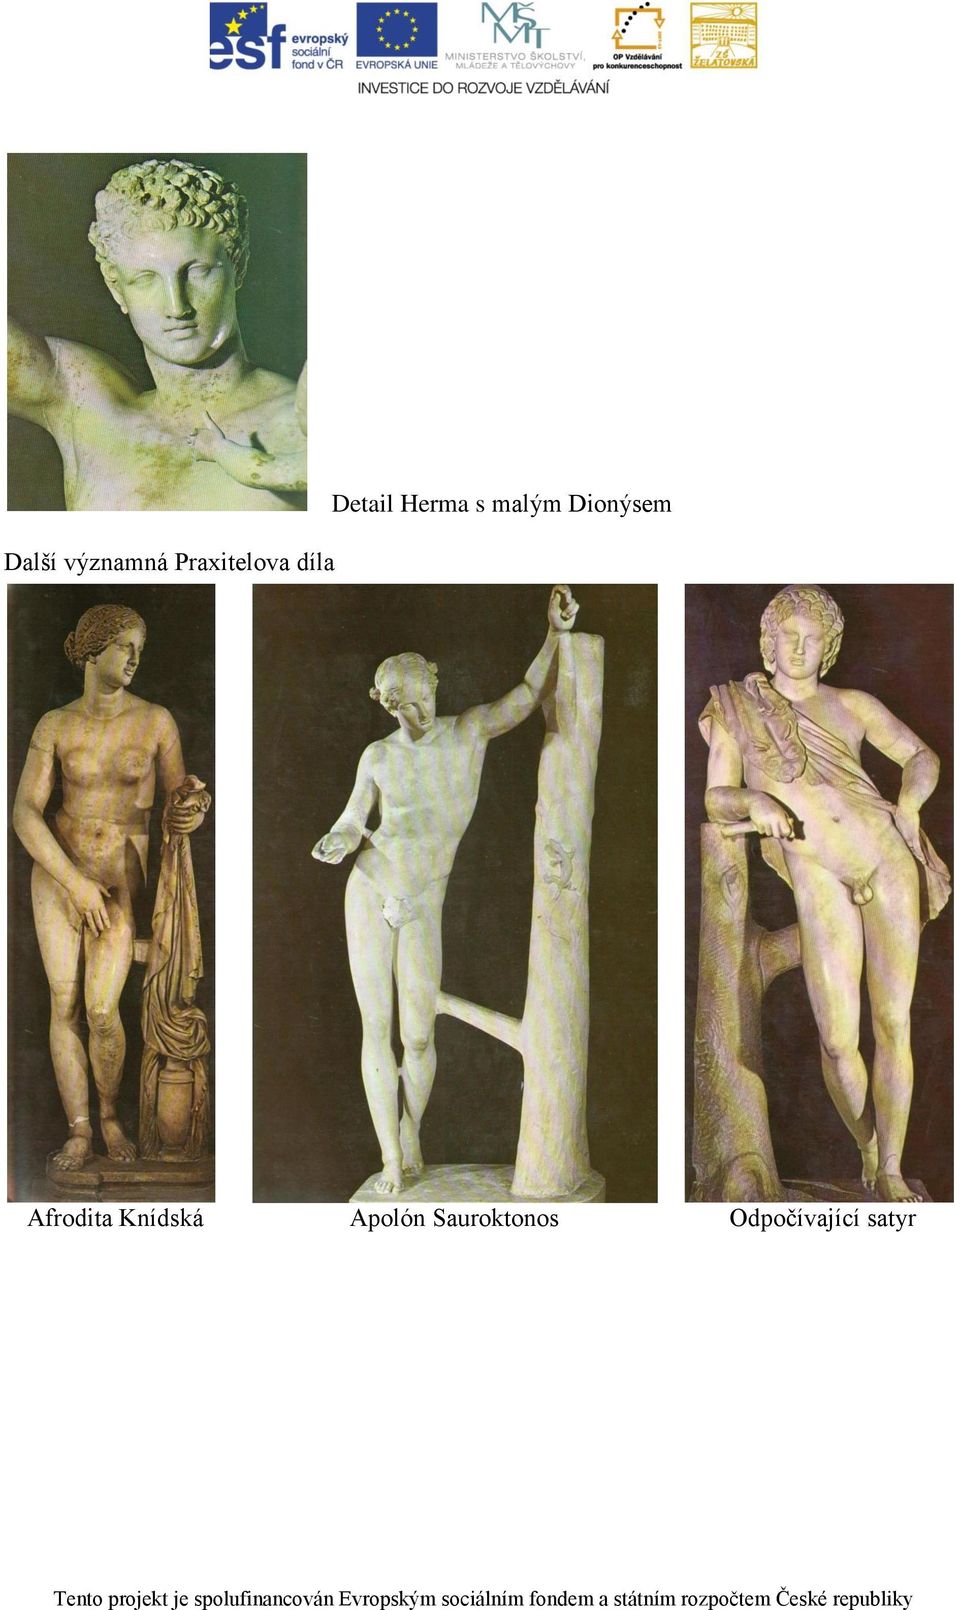 Dionýsem Afrodita Knídská